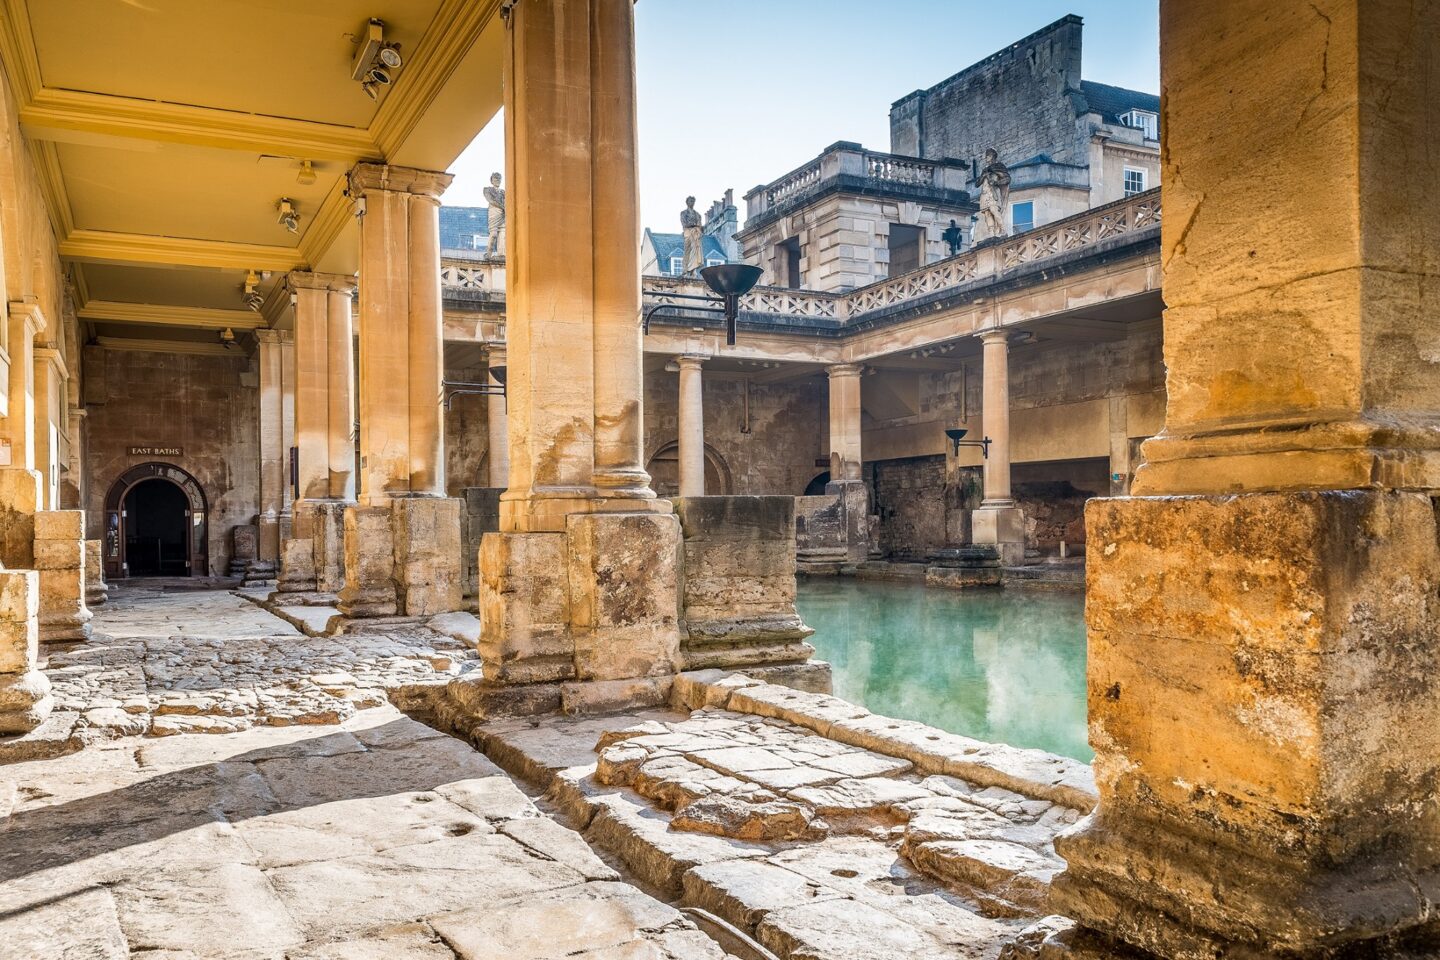 Roman Baths, Bath is perfect as an educational day trip.